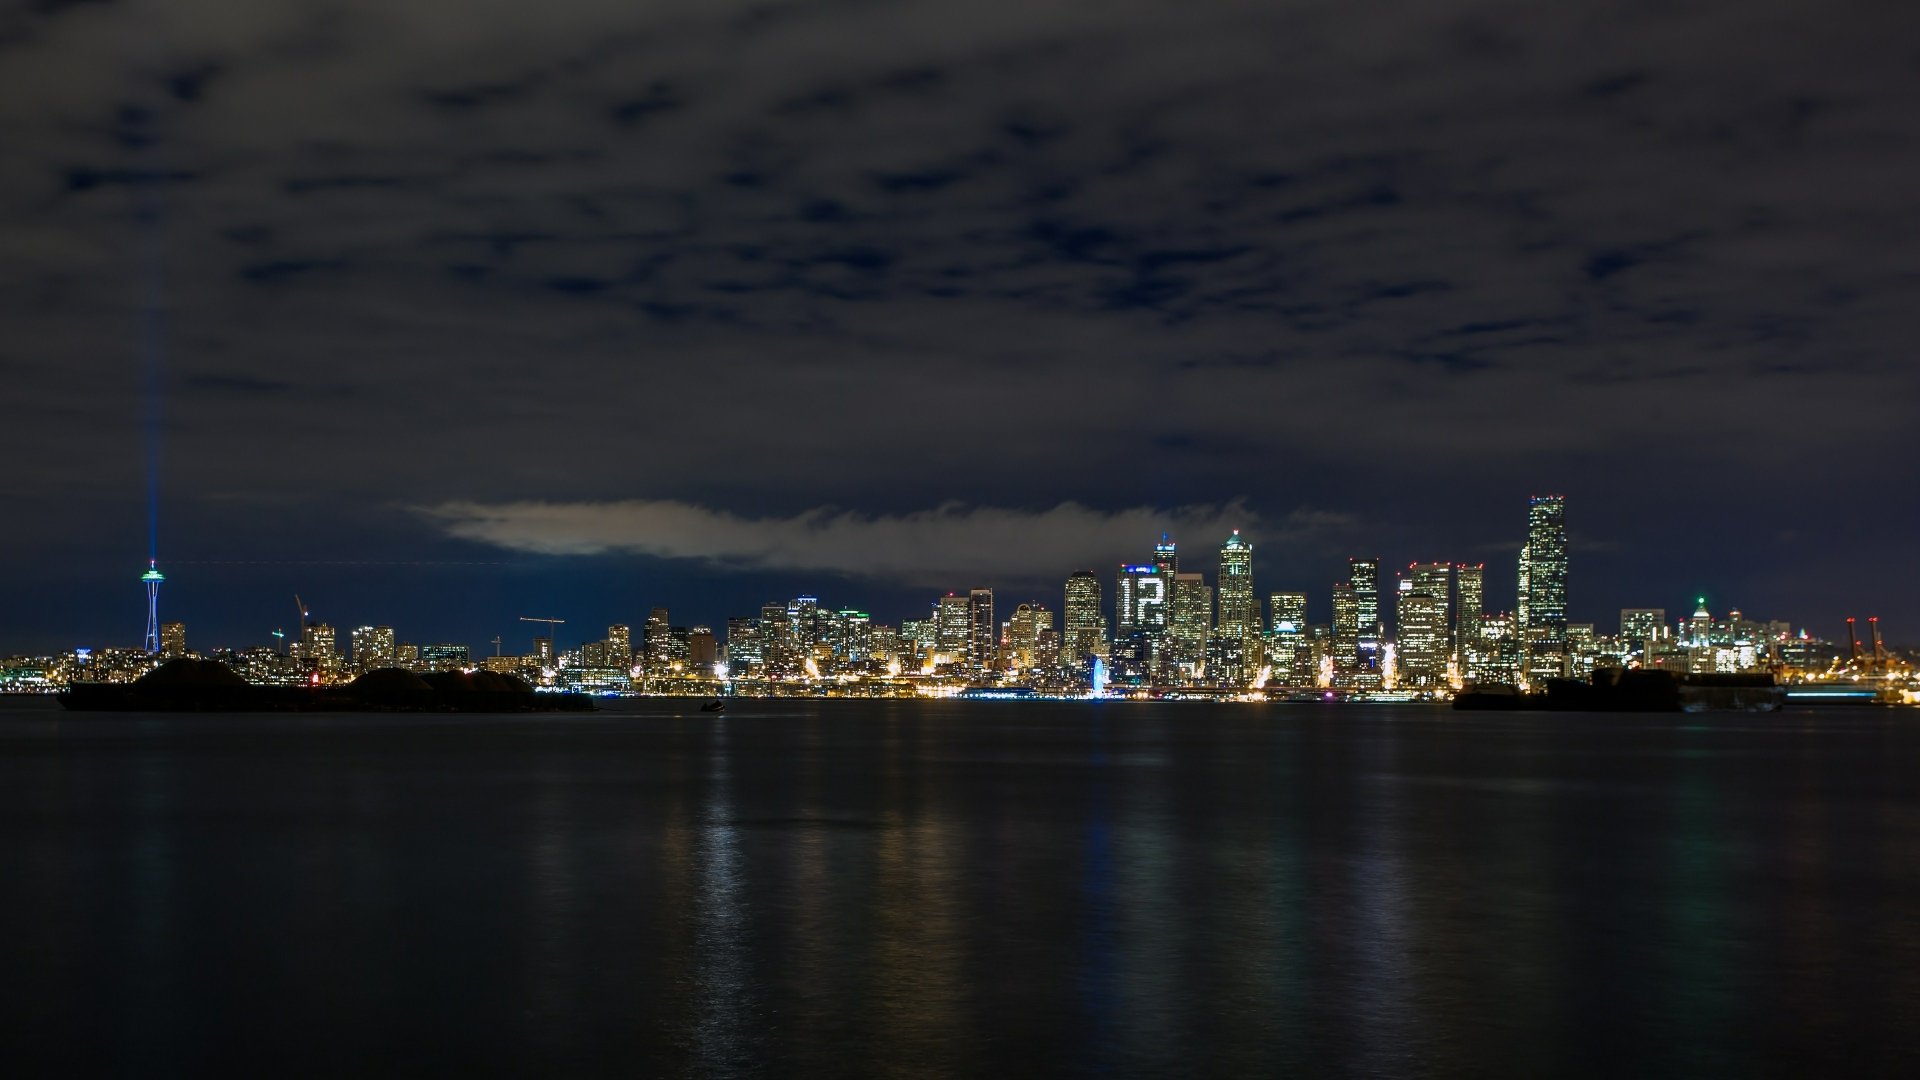 3840x2160 Skyline - Seattle, Washington Wallpaper Background Image. 